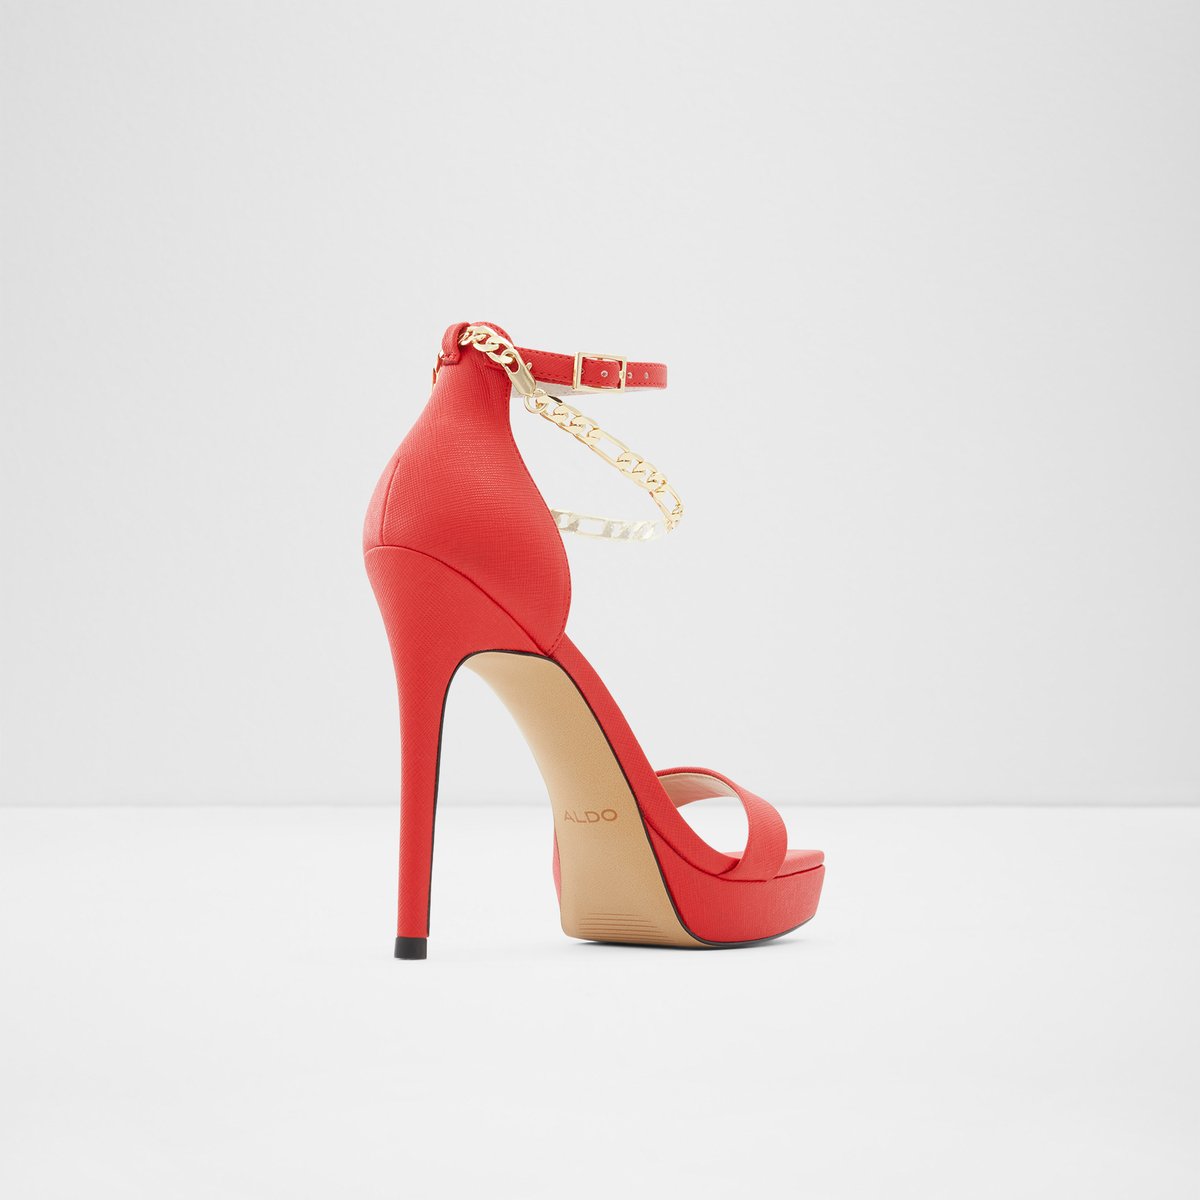 Scarlettchain Red High heels | US